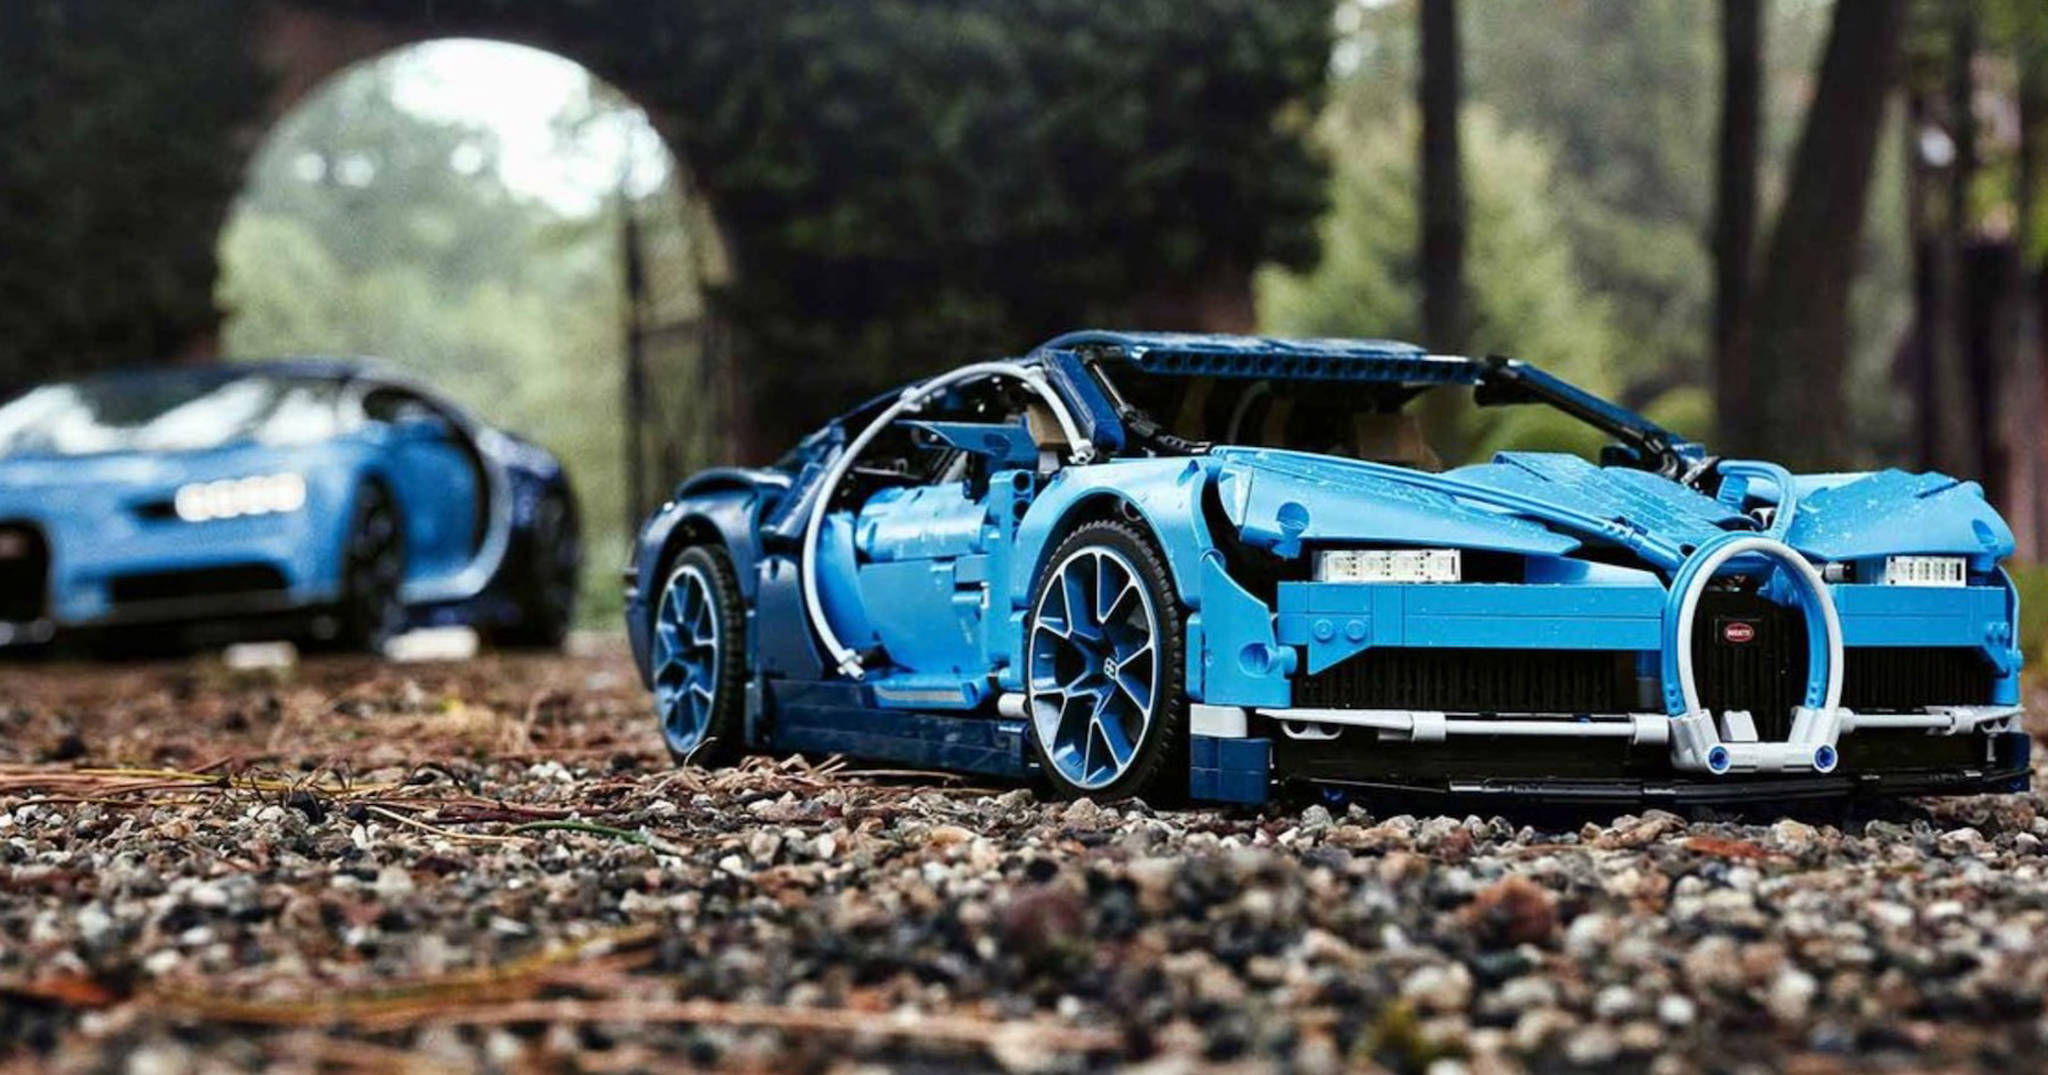 Mô hình LEGO của Bugatti Chiron rất đẹp: 3599 mảnh, chi tiết đến cả động cơ, giá 350$